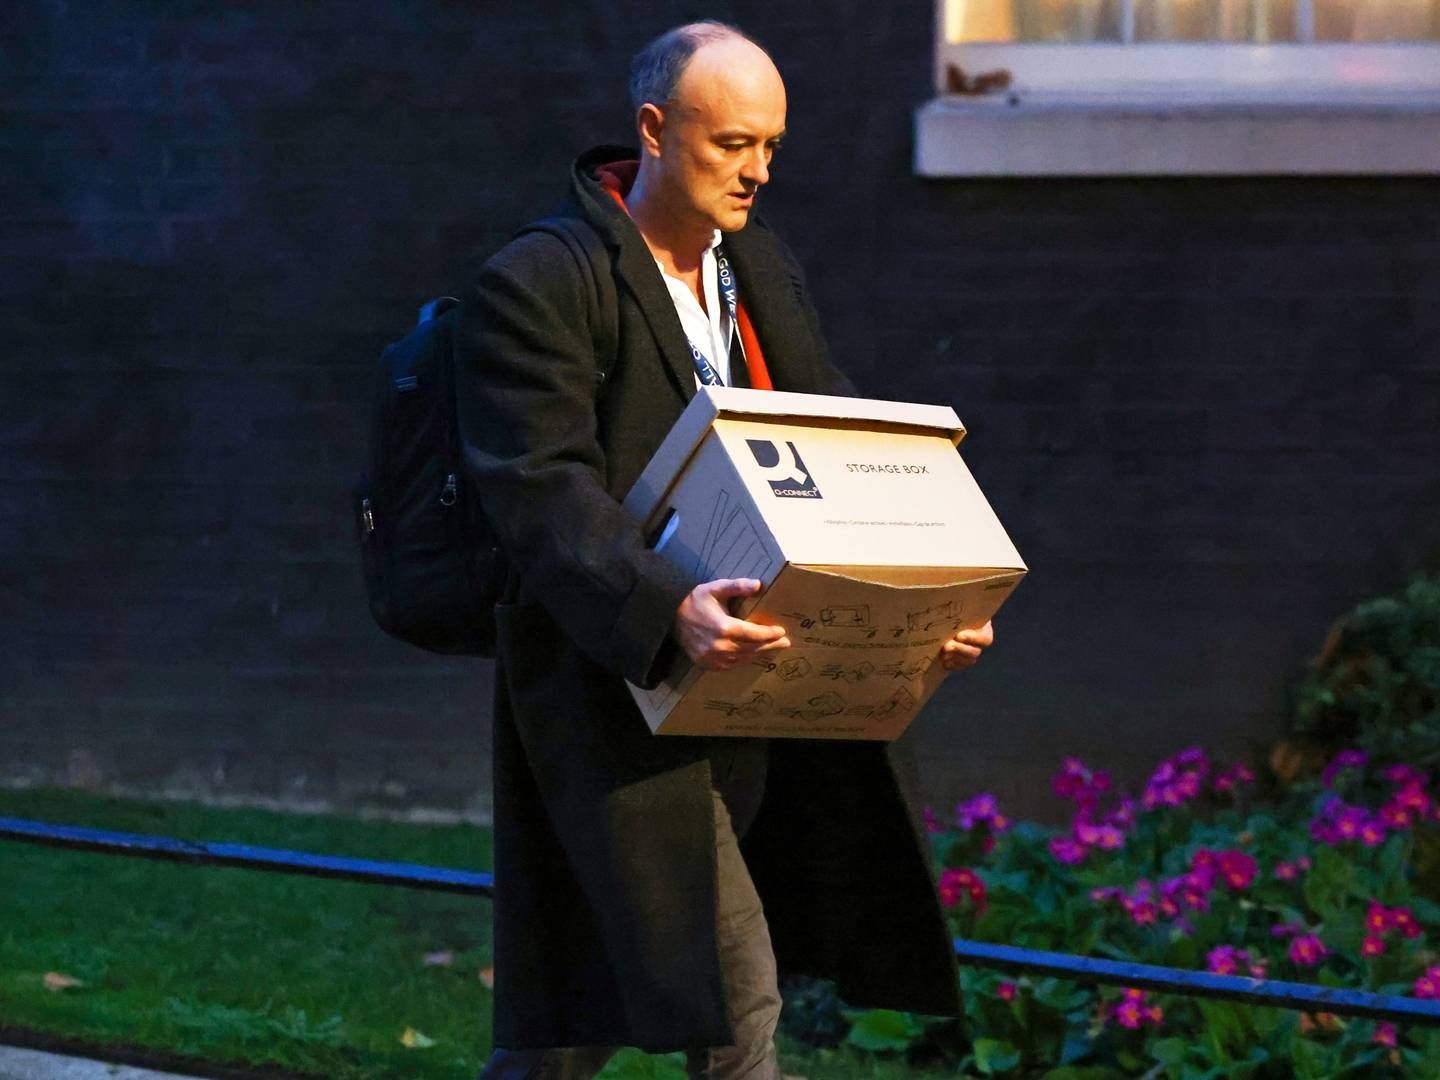 Dominic Cummings ses her forlade Downing Street 10 fredag 13. november. | Foto: Henry Nicholls/REUTERS / X06612